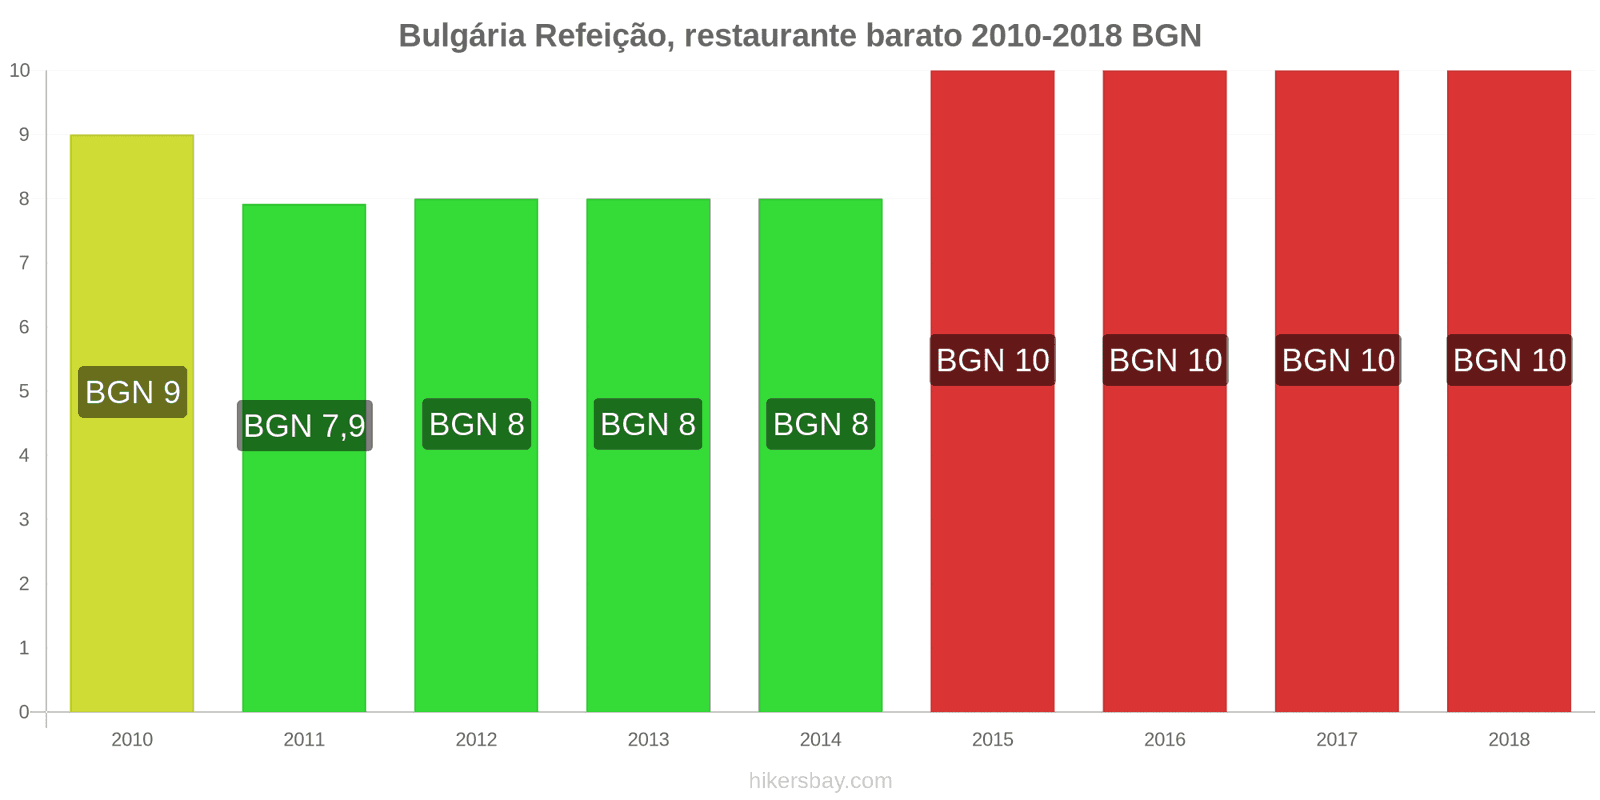 Bulgária mudanças de preços Refeição em um restaurante econômico hikersbay.com